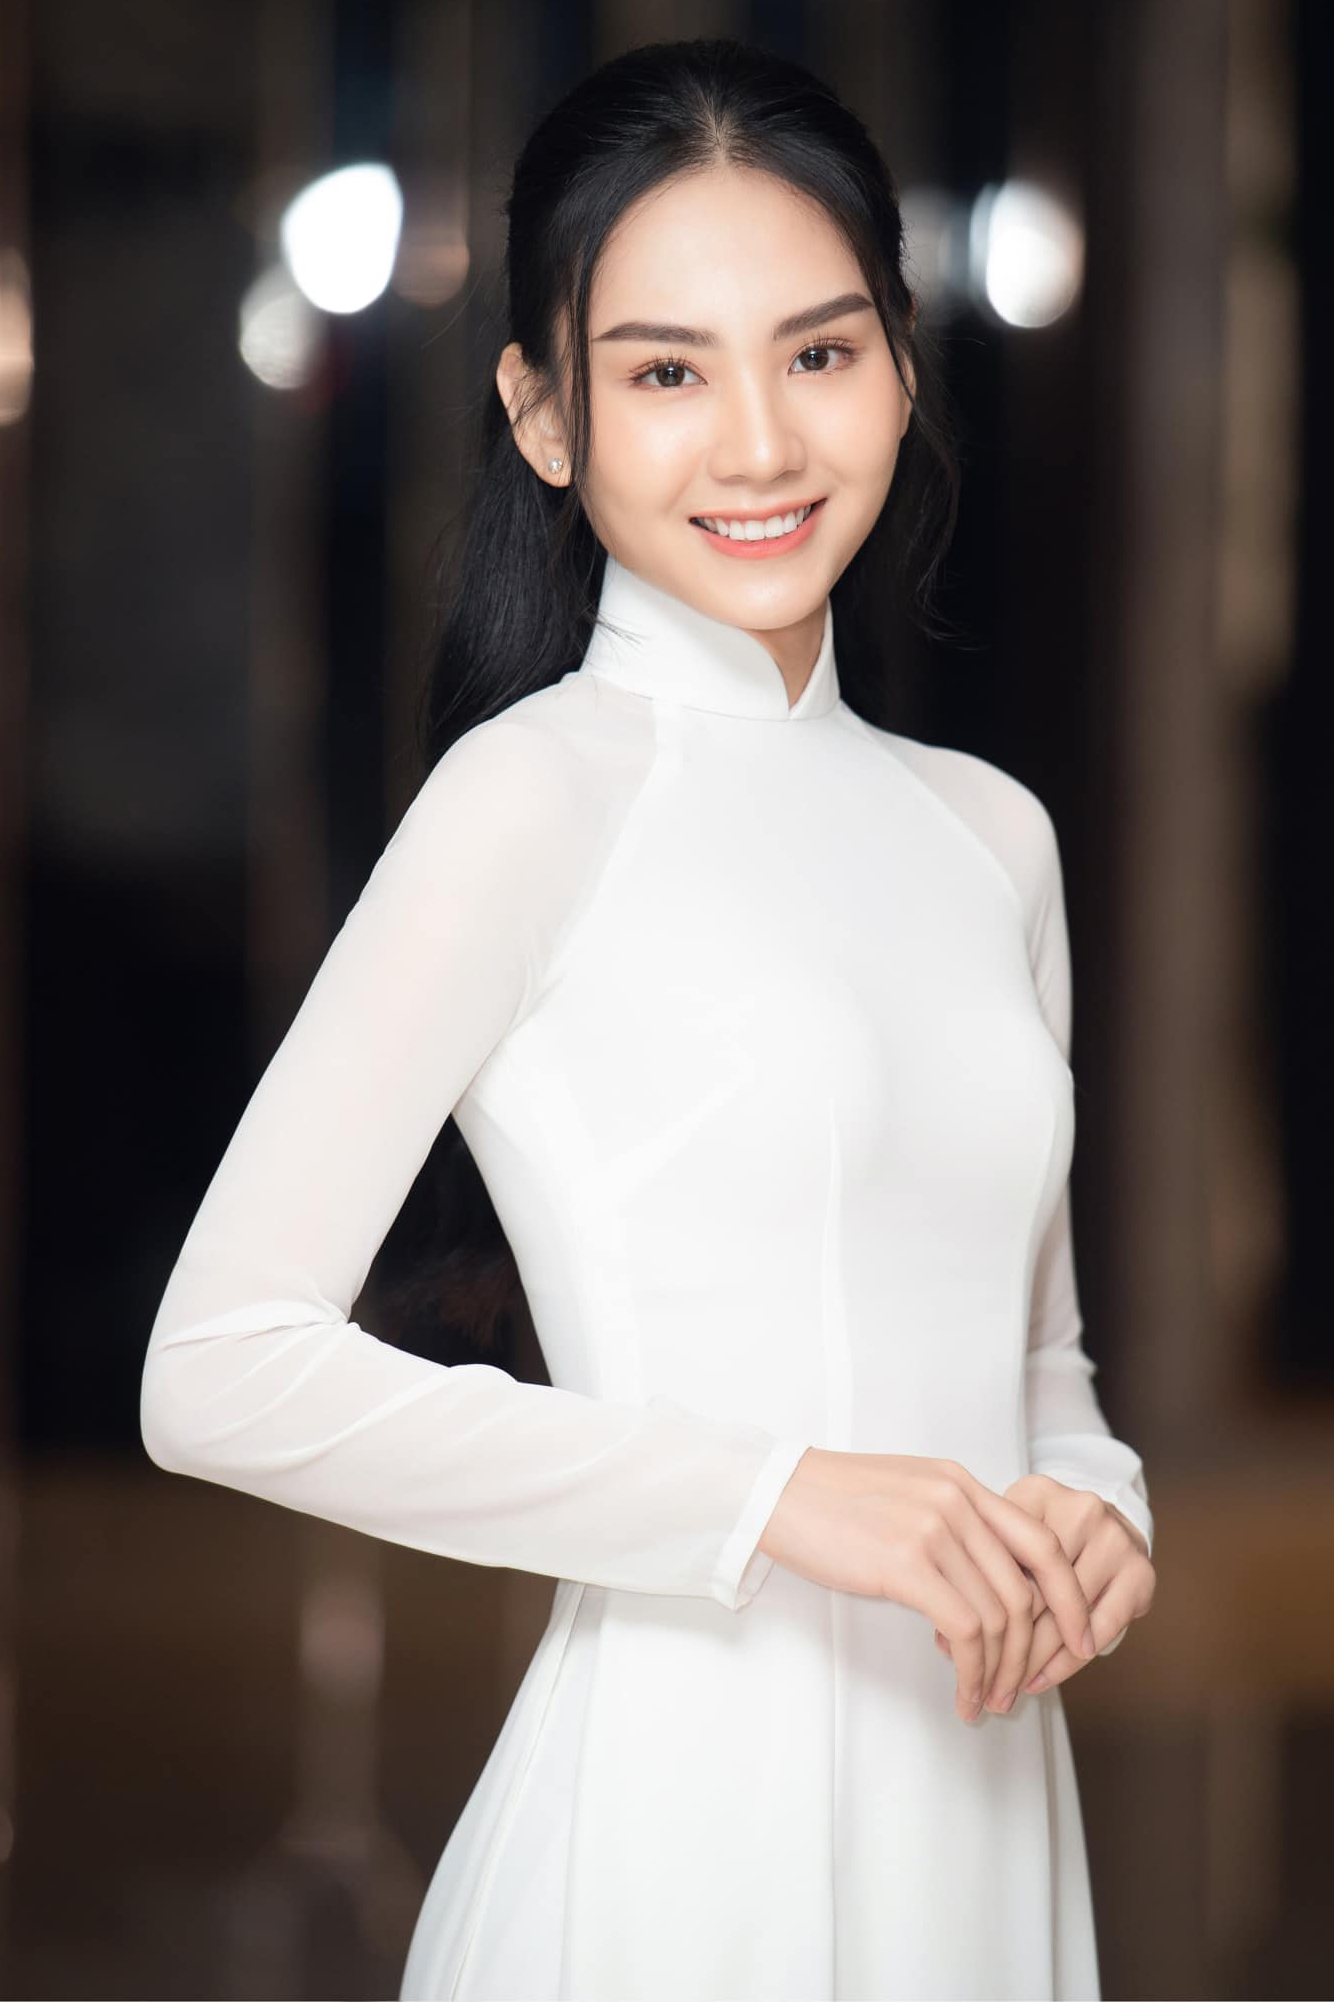 Hoa hậu thường diện áo dài trắng trong nhiều dịp tham gia các hoạt động cộng đồng. Trong phần thi ứng xử của top 2, cô liệt kê áo dài là một trong những nét đẹp của văn hóa Việt, cần được các bạn trẻ giữ gìn.